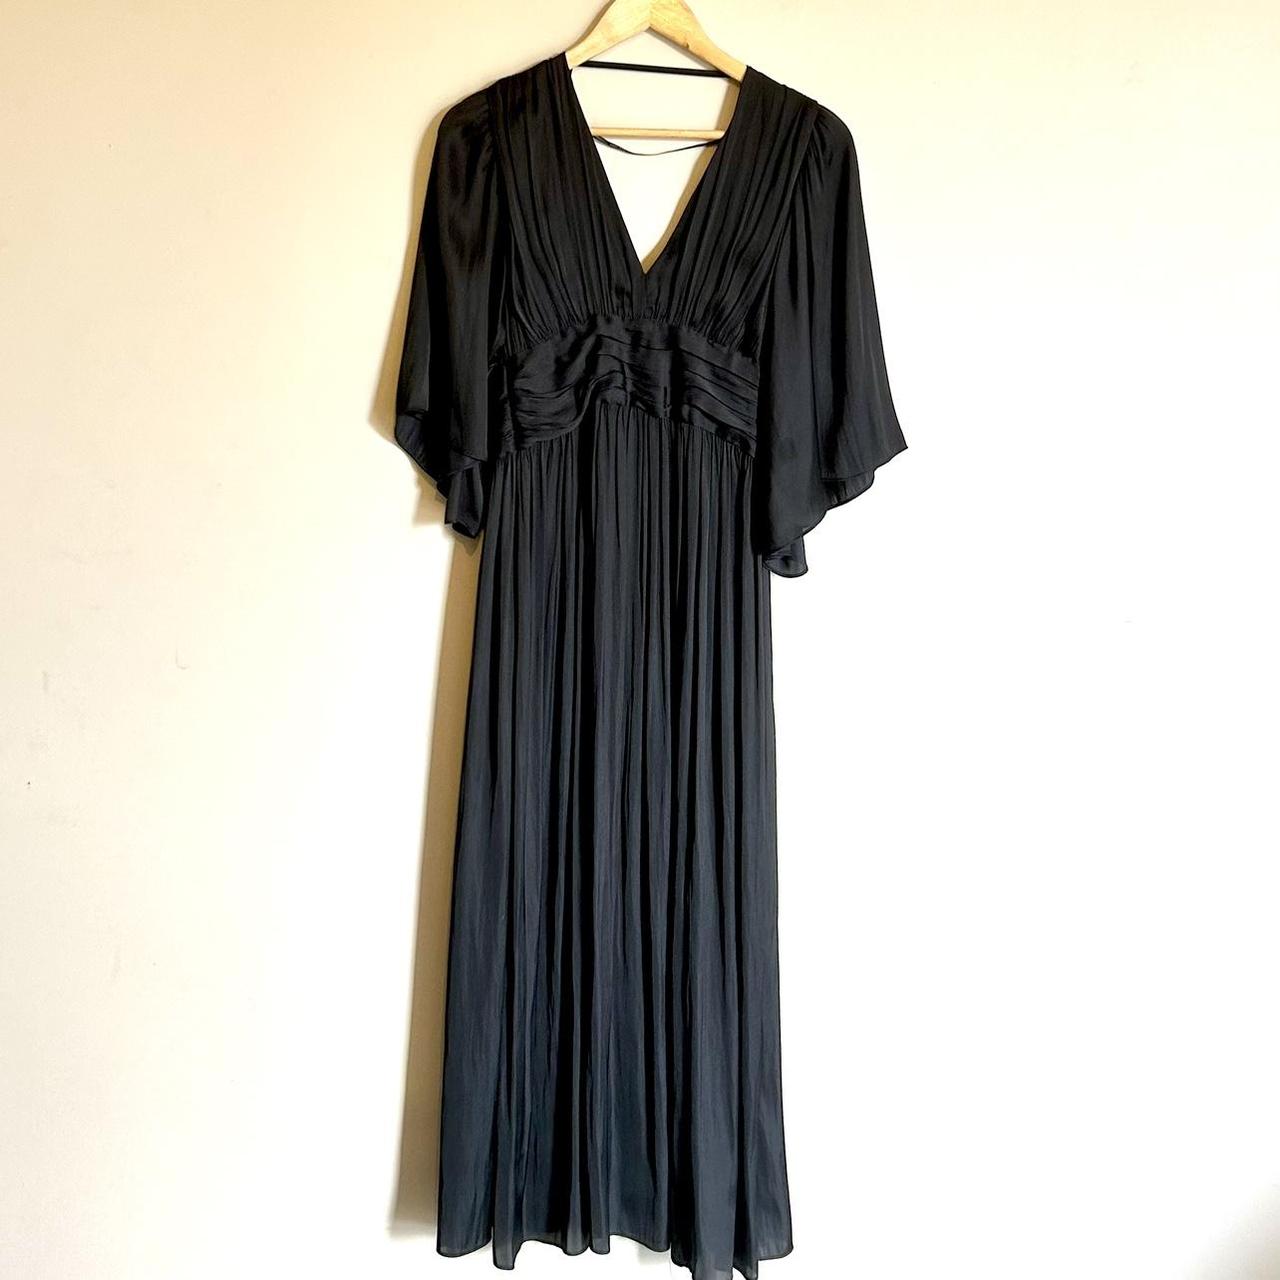 Black Wayne Cooper midi dress, worn once and in... - Depop